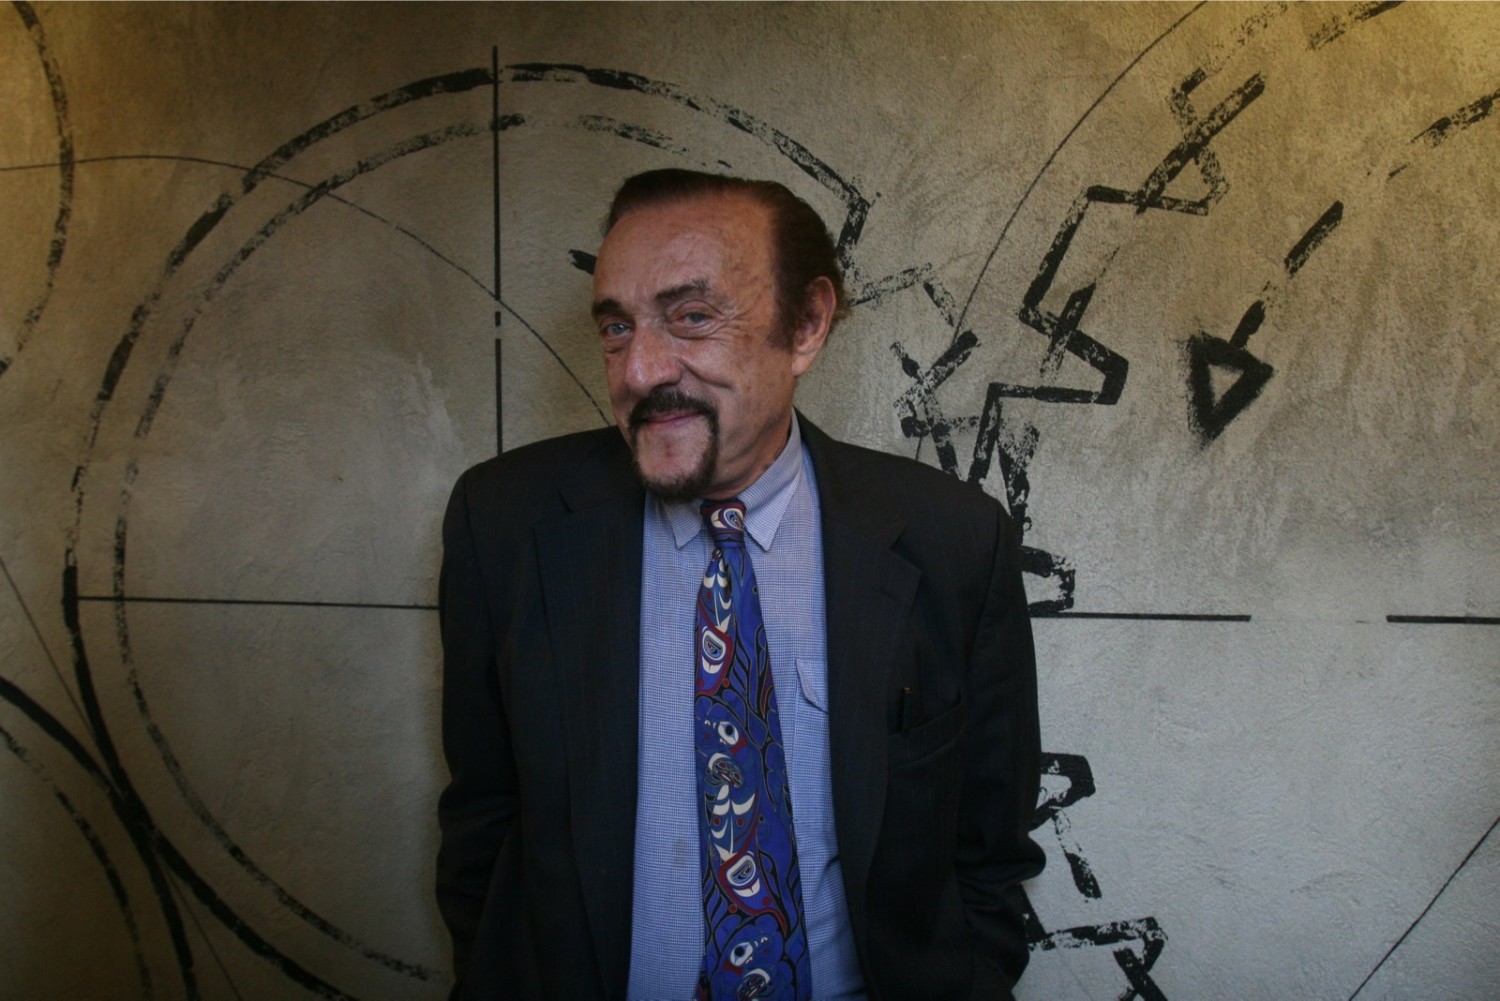 Meeting Philip G. Zimbardo